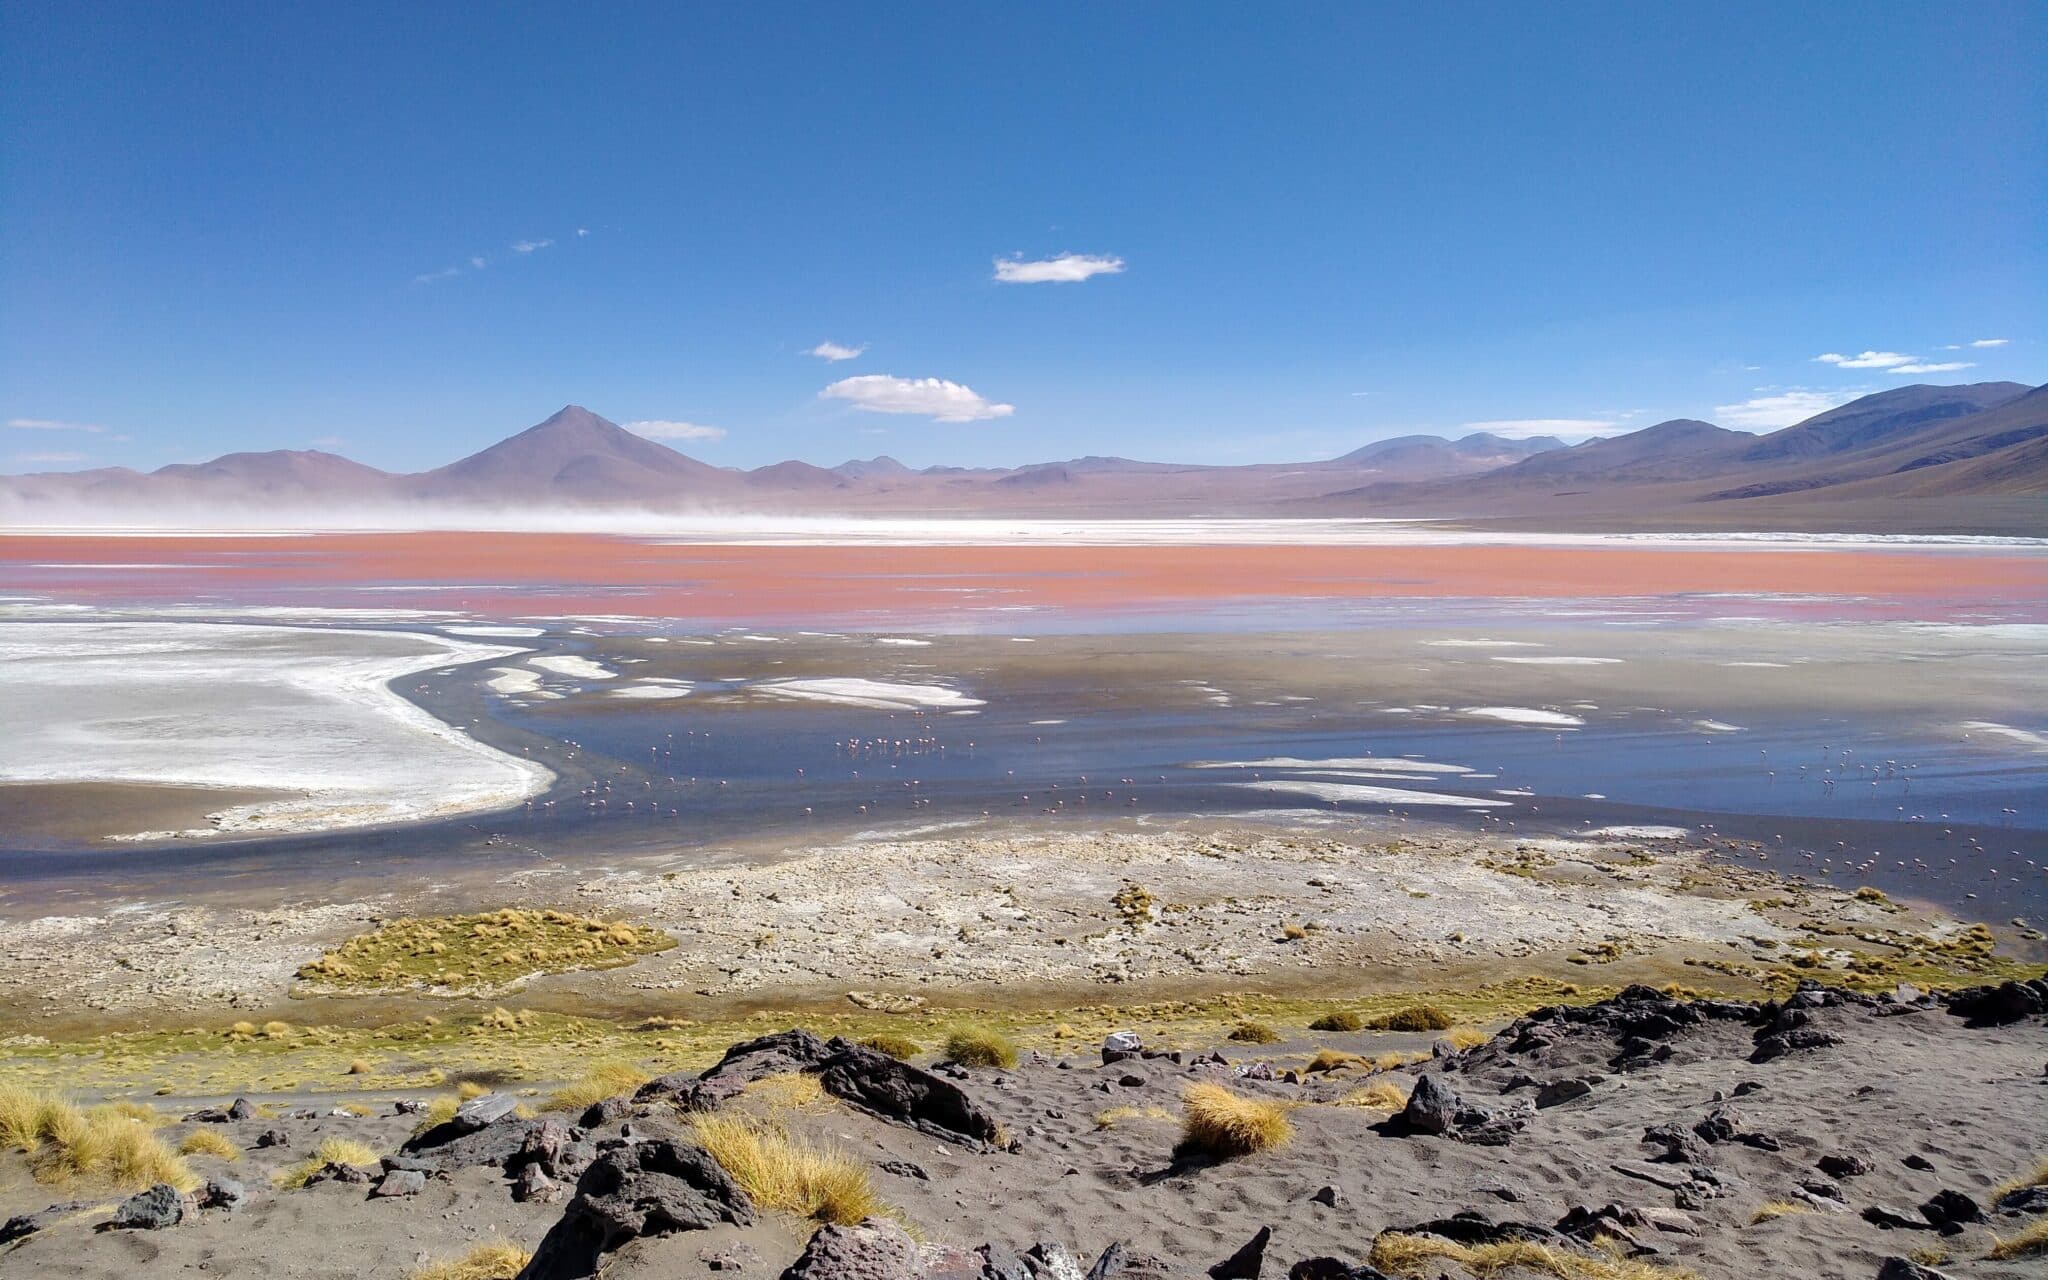 Der Laguna Colorada, ein roter See, in dem Flamingos leben, im Hintergrund lila schimmernde Berglandschaften.